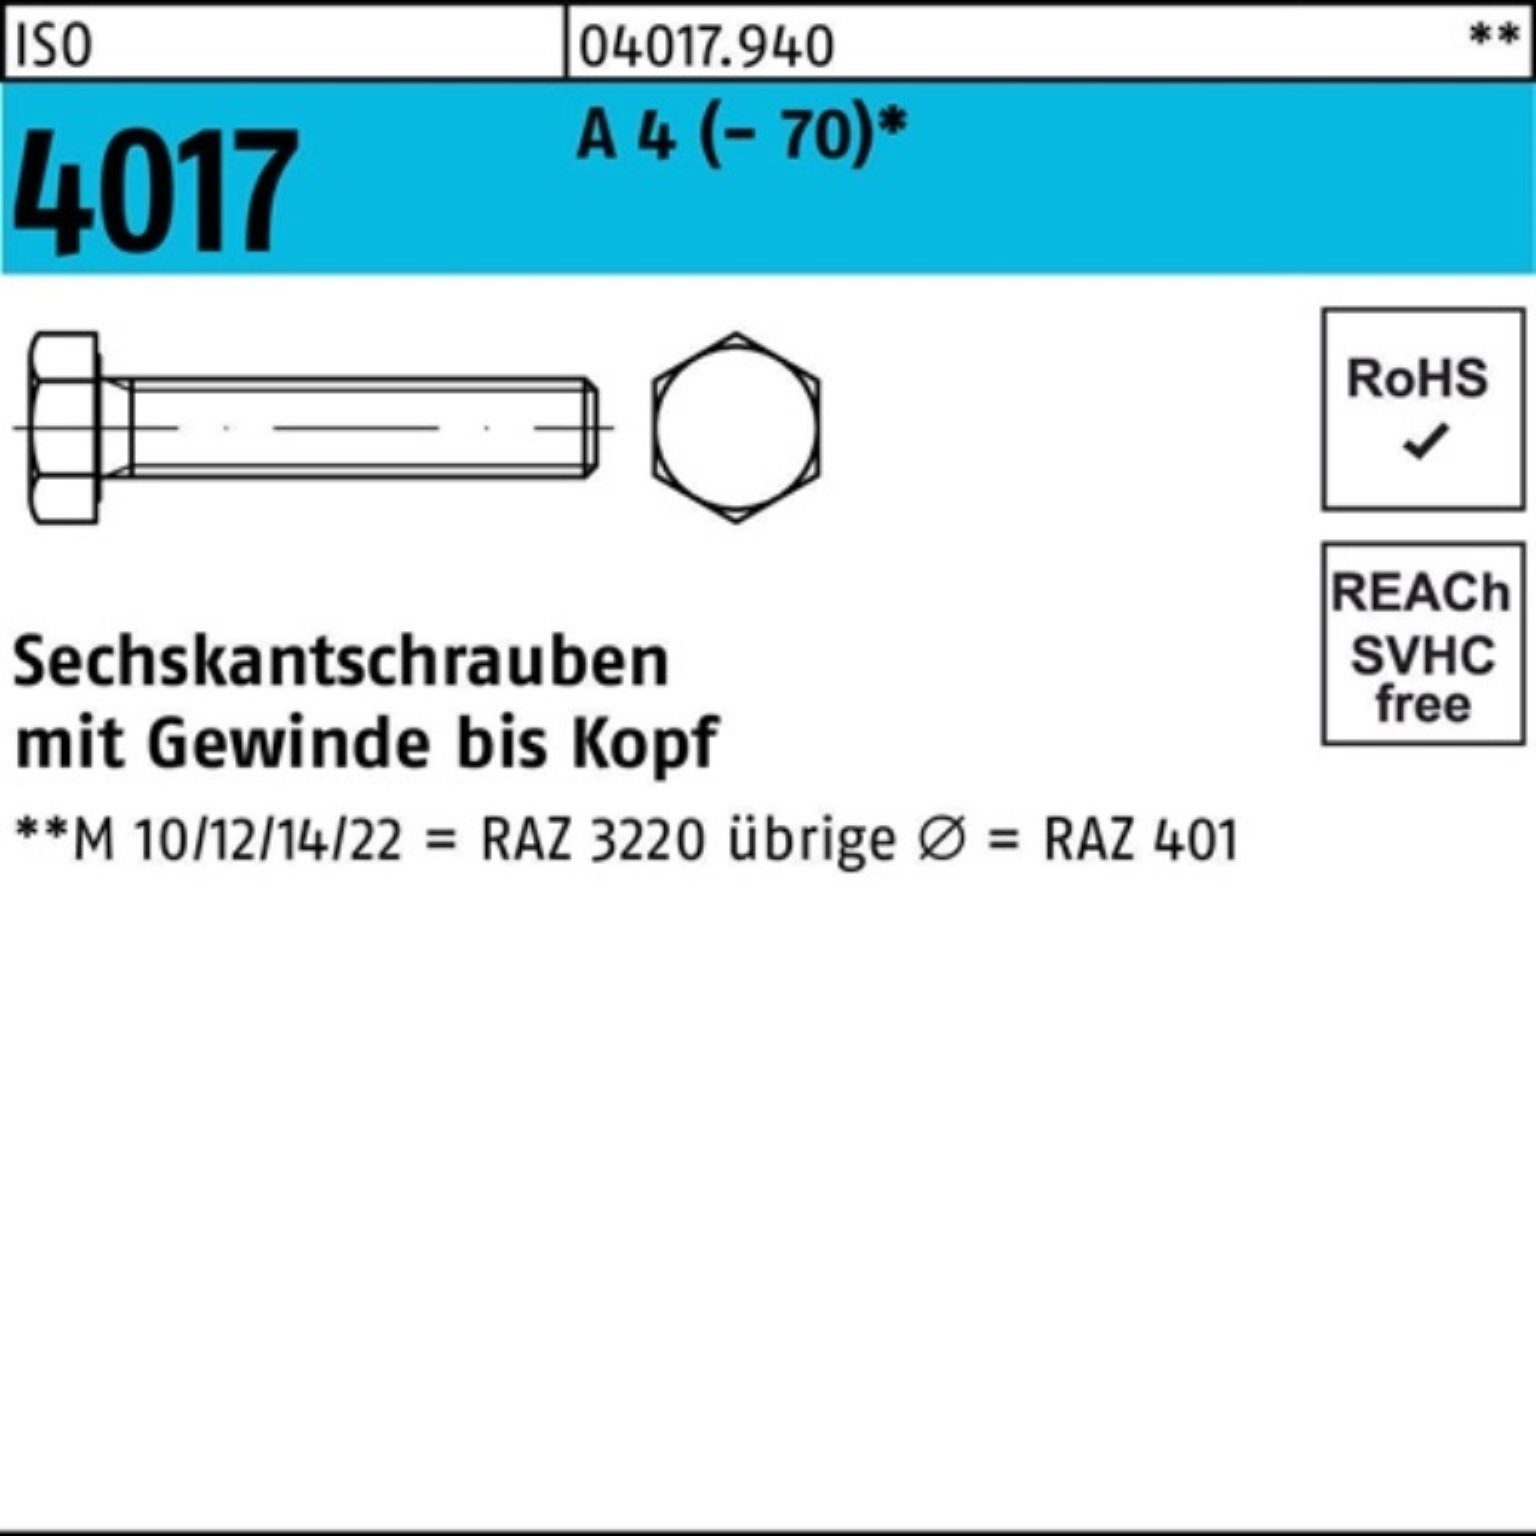 Bufab Sechskantschraube 100er Pack Sechskantschraube ISO 4017 VG M12x 16 A 4 (70) 100 Stück